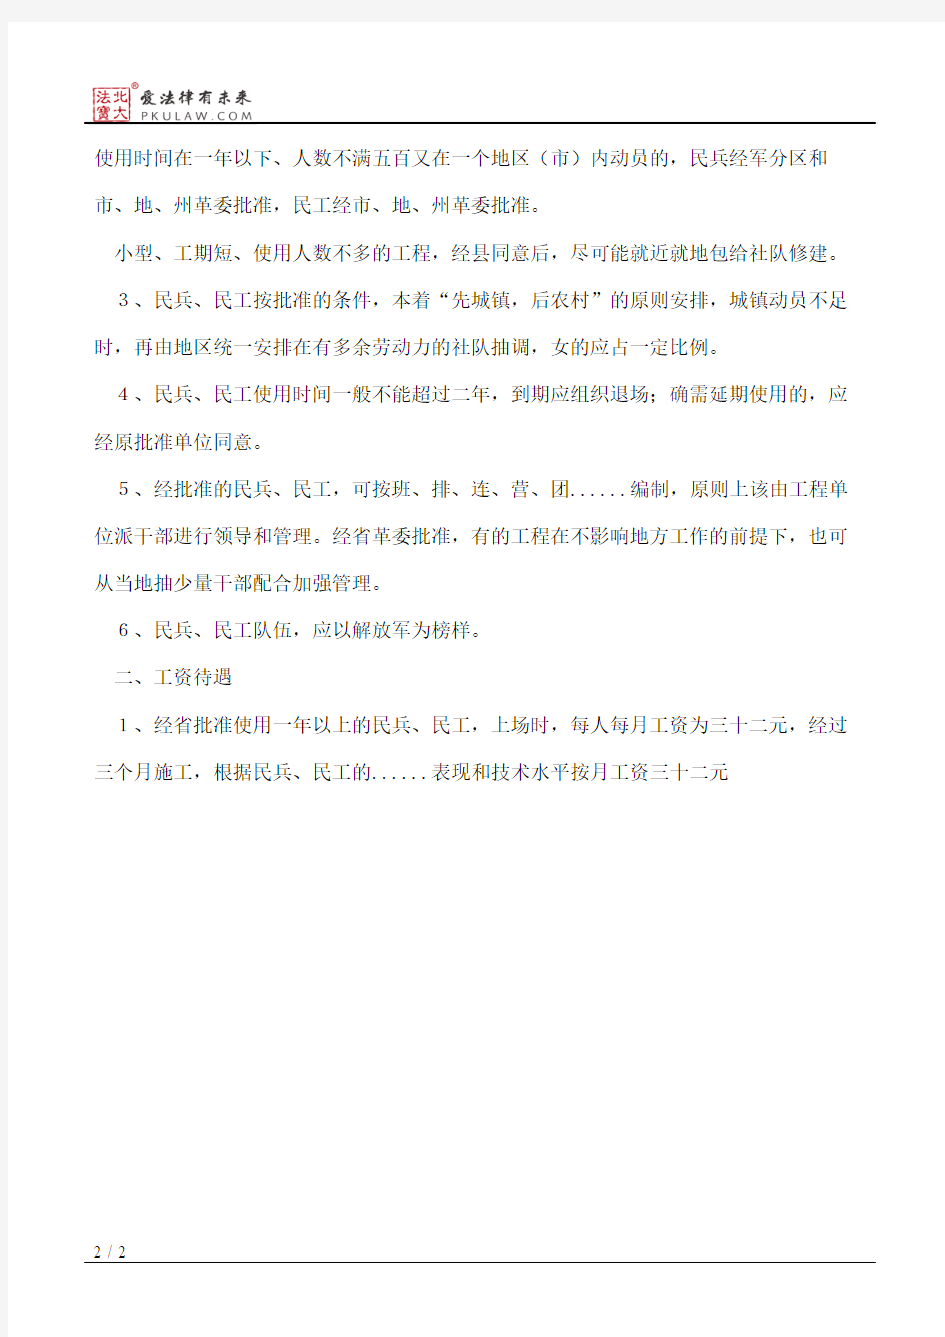 四川省革命委员会关于动员民兵、民工参加国家建设有关待遇问题的